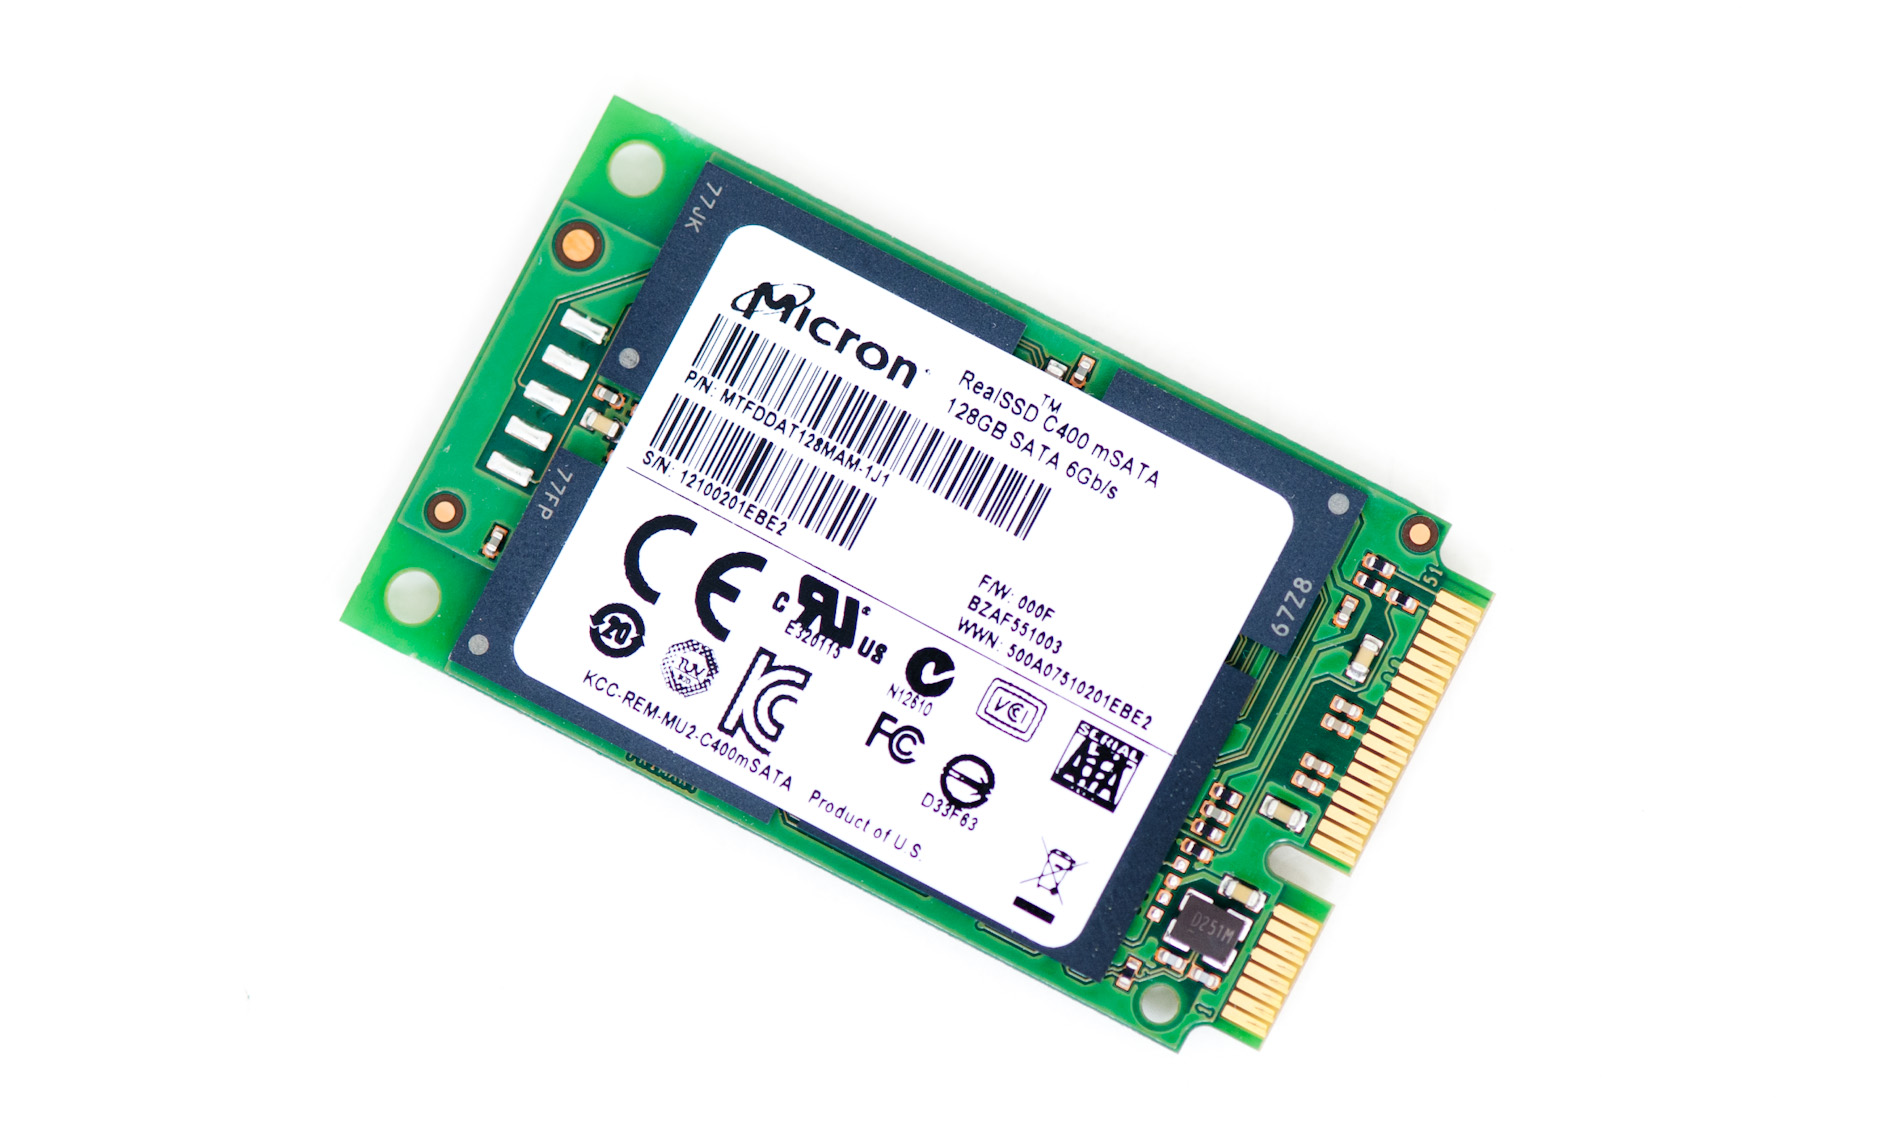 Micron C400 mSATA SSD Review